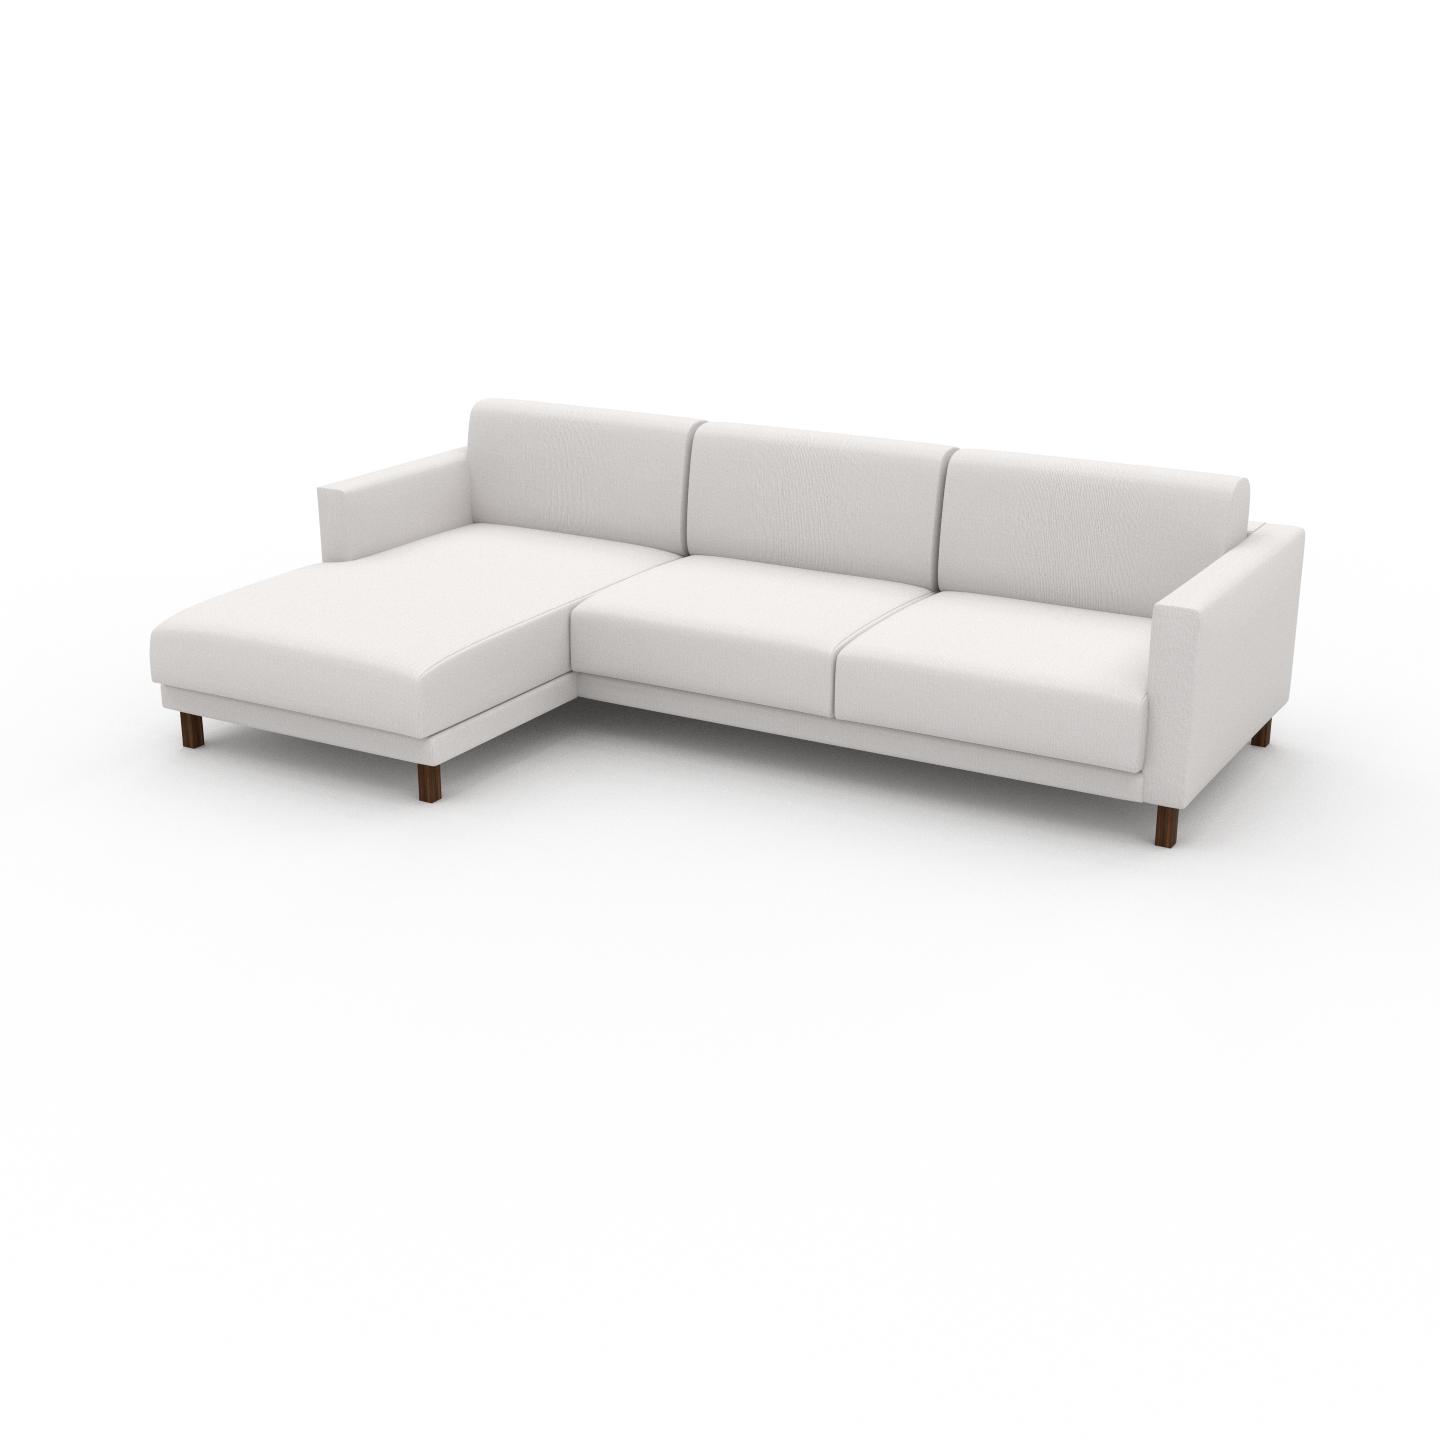 MYCS Ecksofa Weiß - Flexible Designer-Polsterecke, L-Form: Beste Qualität, einzigartiges Design - 264 x 75 x 162 cm, konfigurierbar